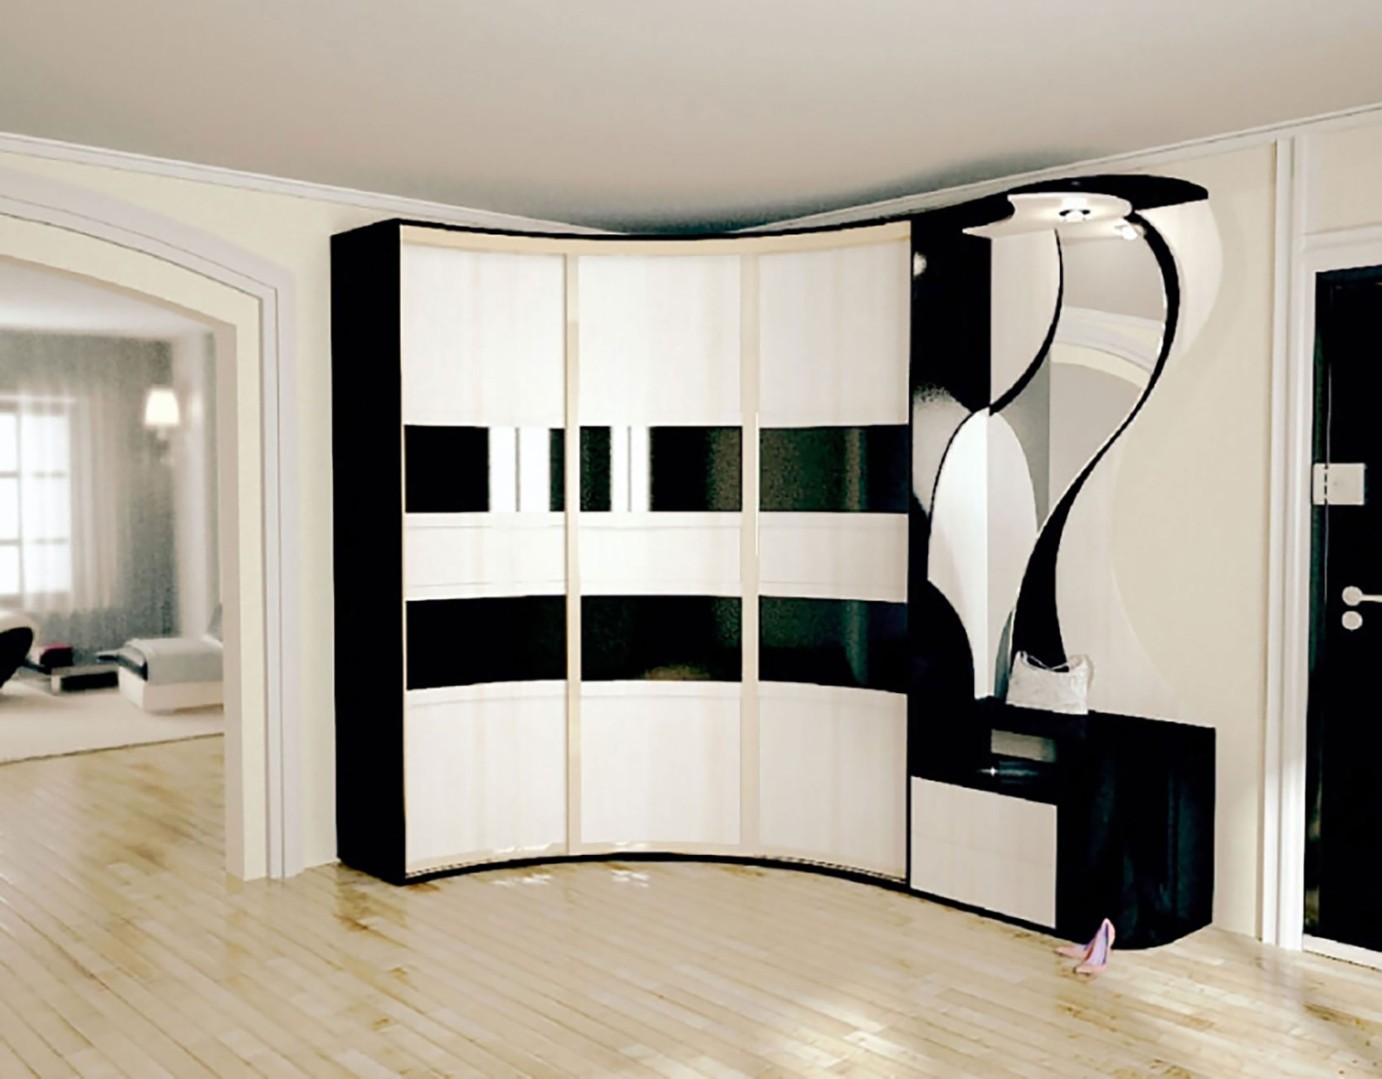 Встроенный угловой шкаф-купе в гостиную фото: дизайн в зале на всю стену, мебель распашная, интерьер комнаты